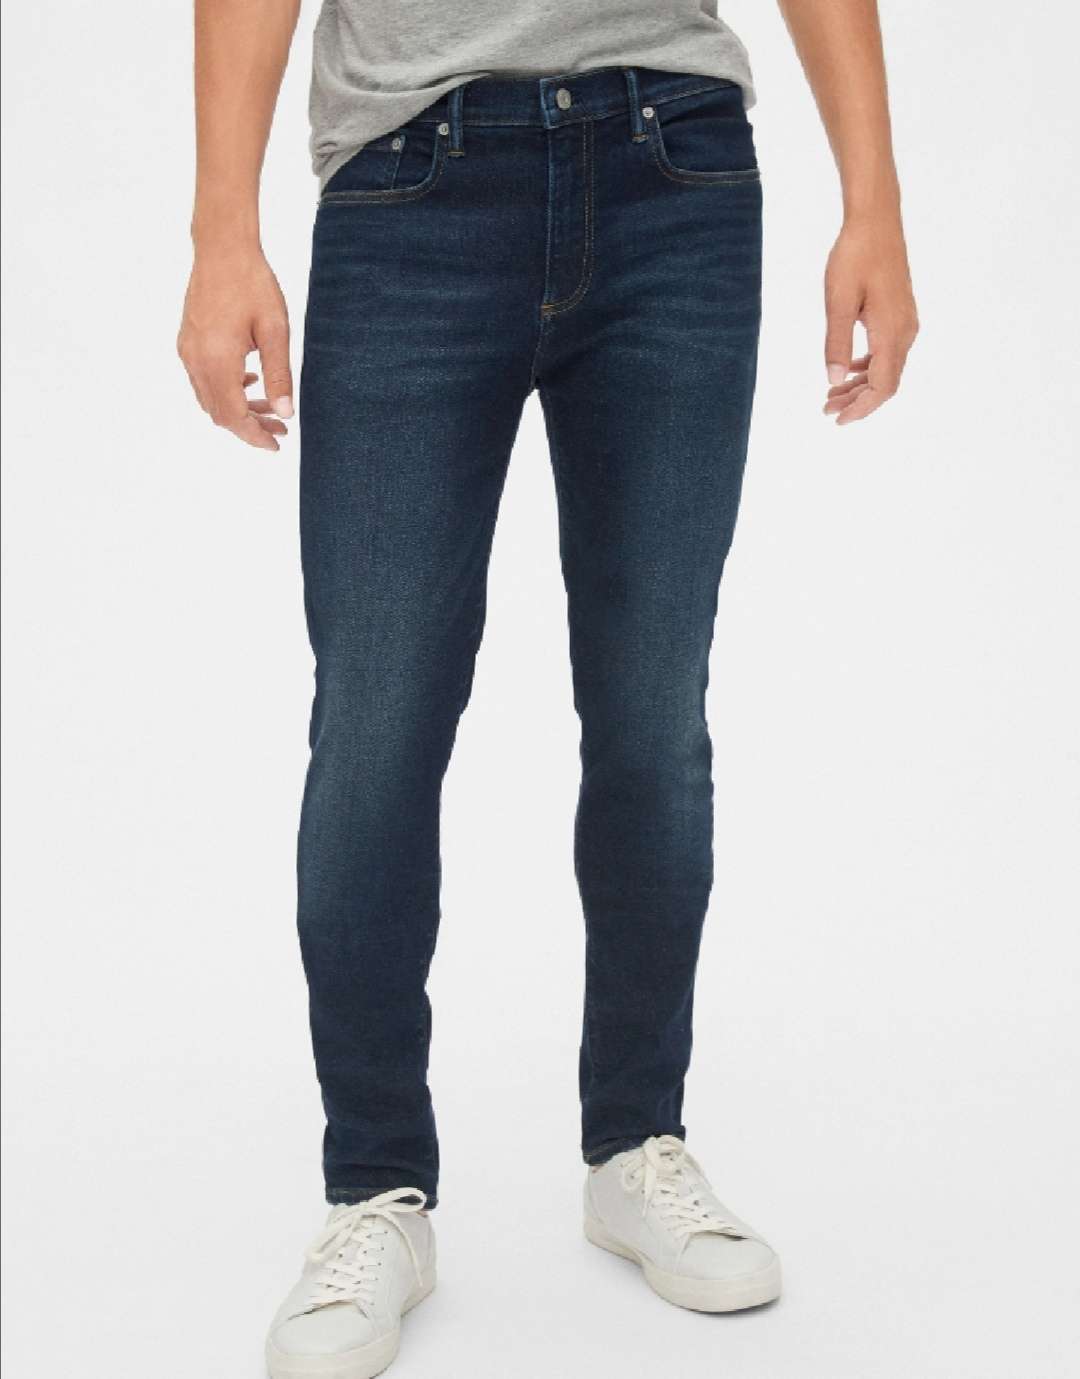 Gap Super Skinny Jeans